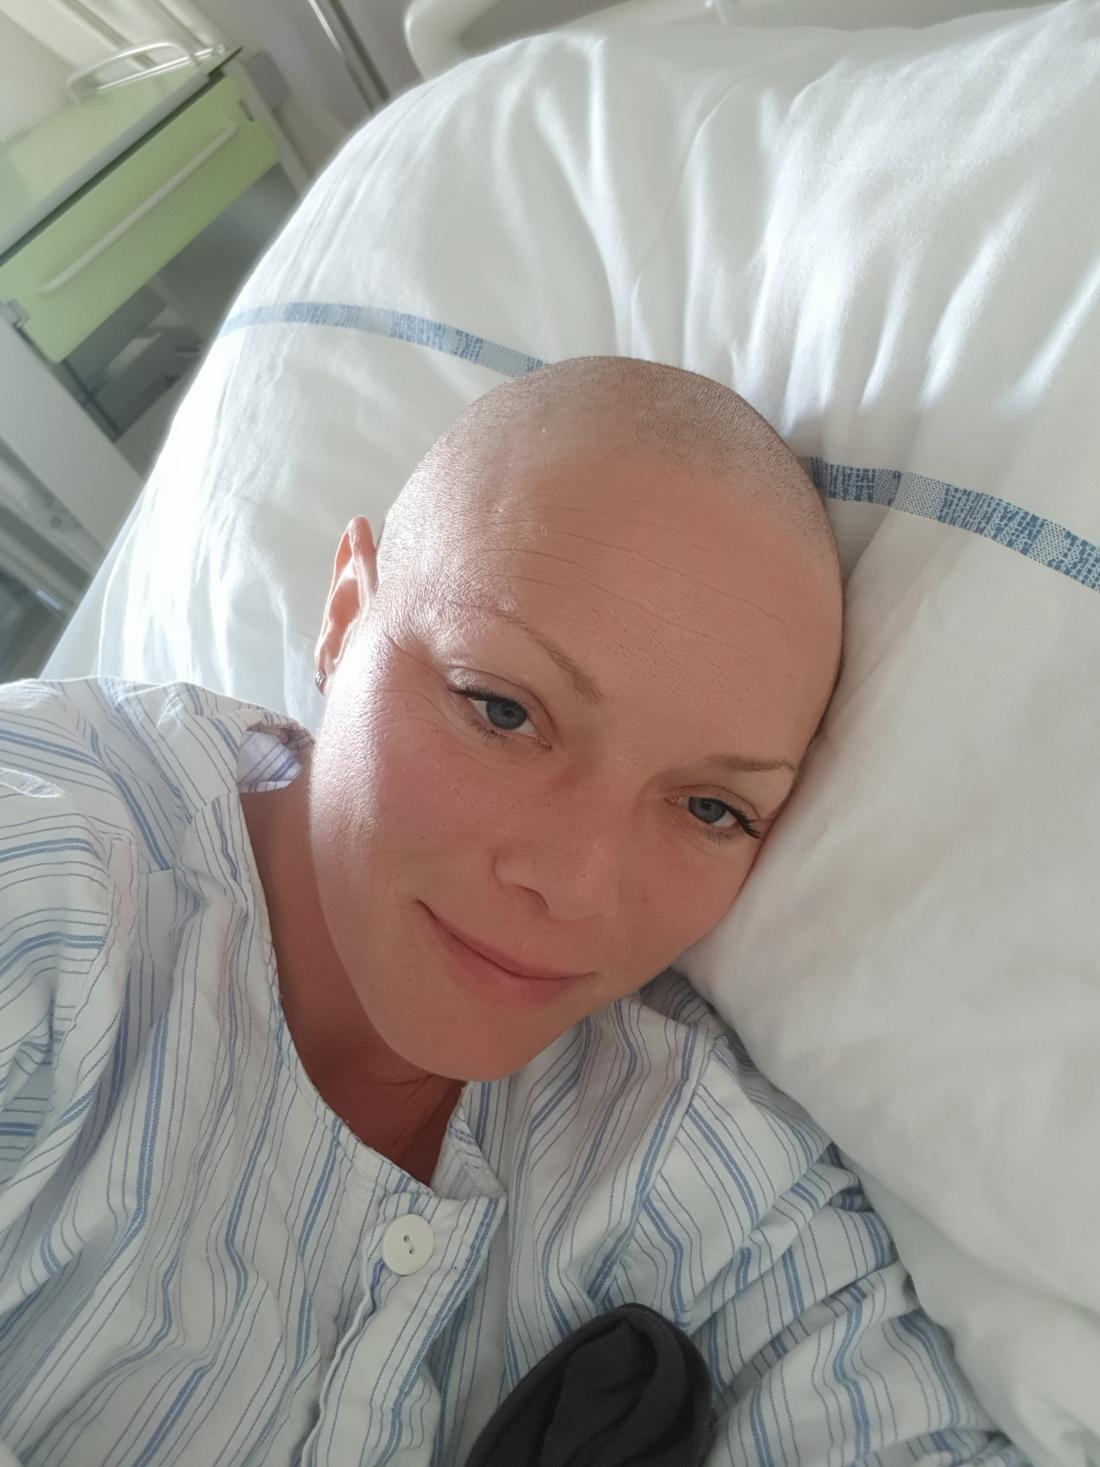 Diagnozo je Manca sprejela kot nov začetek v življenju, ne kot konec. Fotografija je nastala med prejemanjem tretje kemoterapije.